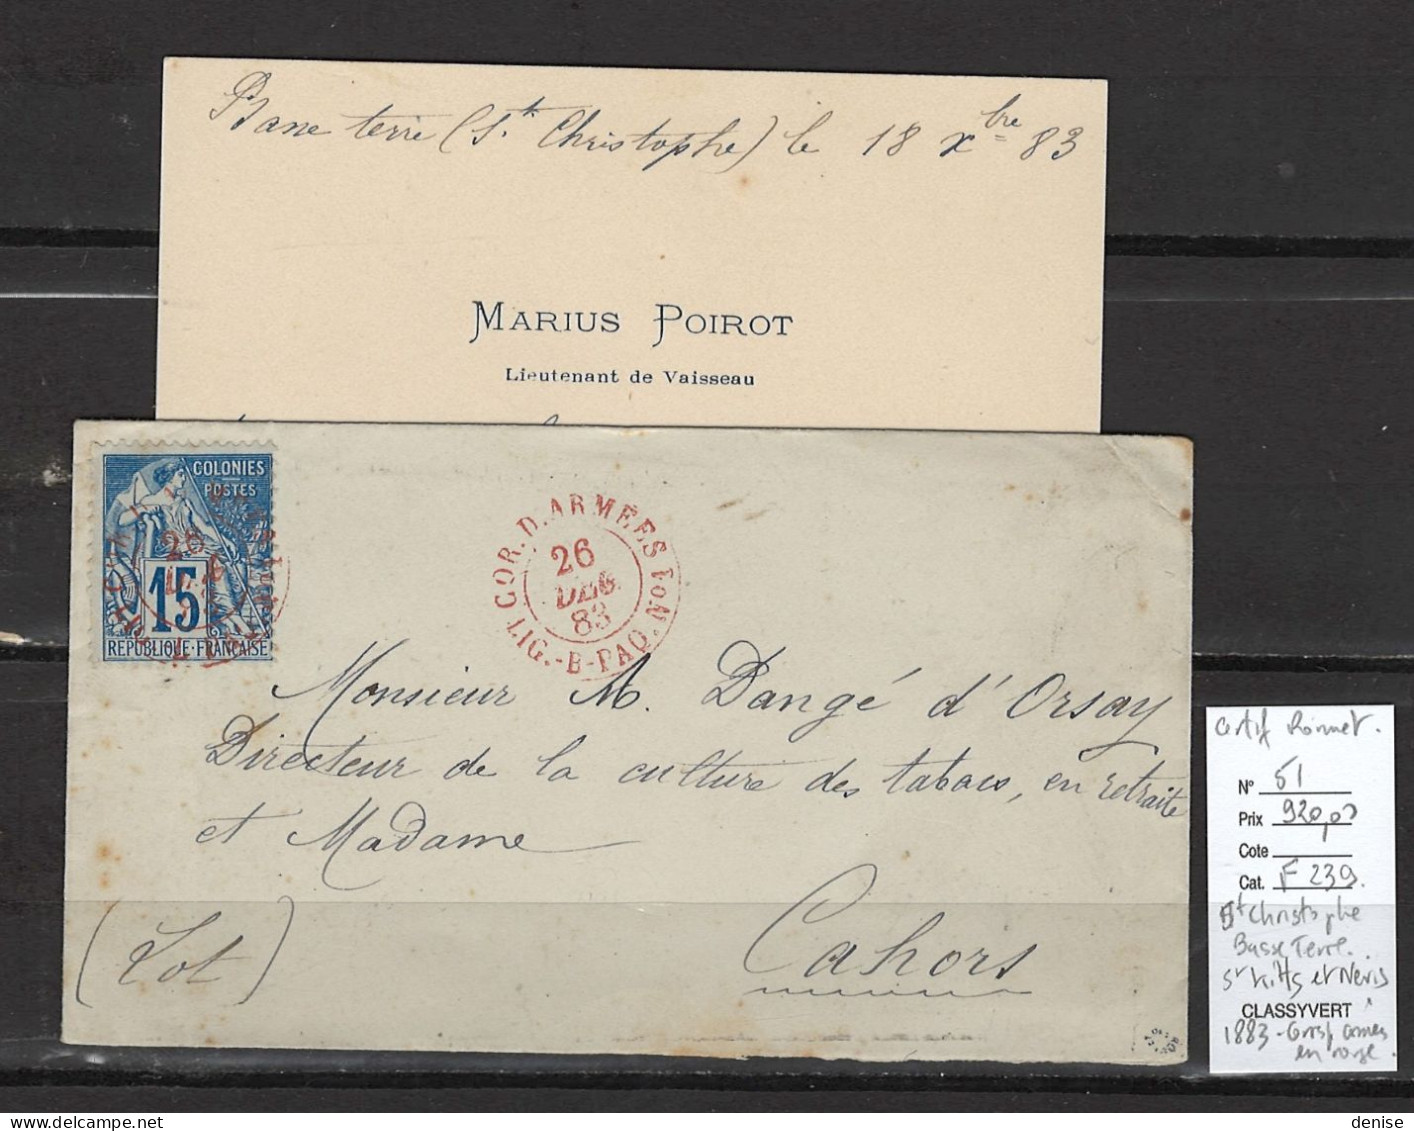 Saint Christophe - Antilles - Basse Terre - 1883 - Enveloppe Avec Sa Carte De Visite - Certificat Roumet - Poste Maritime